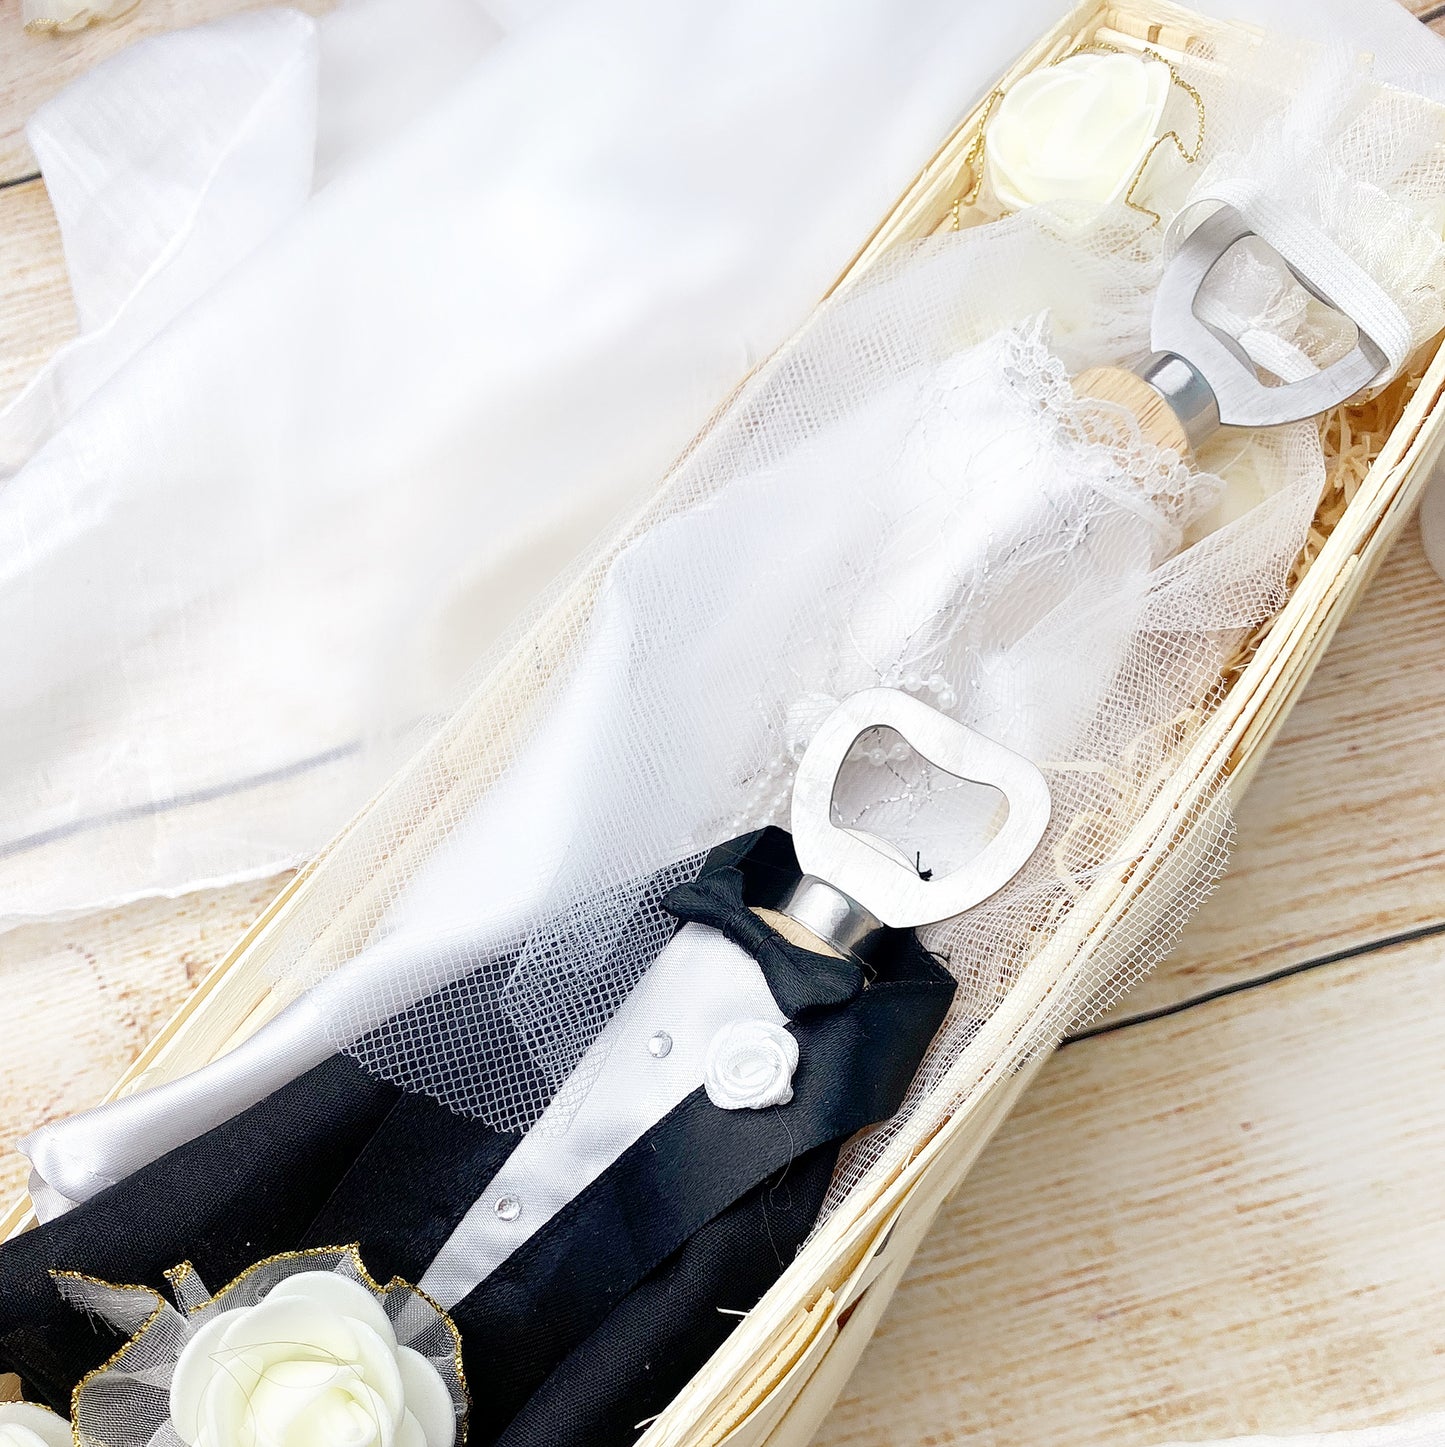 Hochzeitsgeschenk | gravierte Flaschenöffner im Hochzeitsoutfit